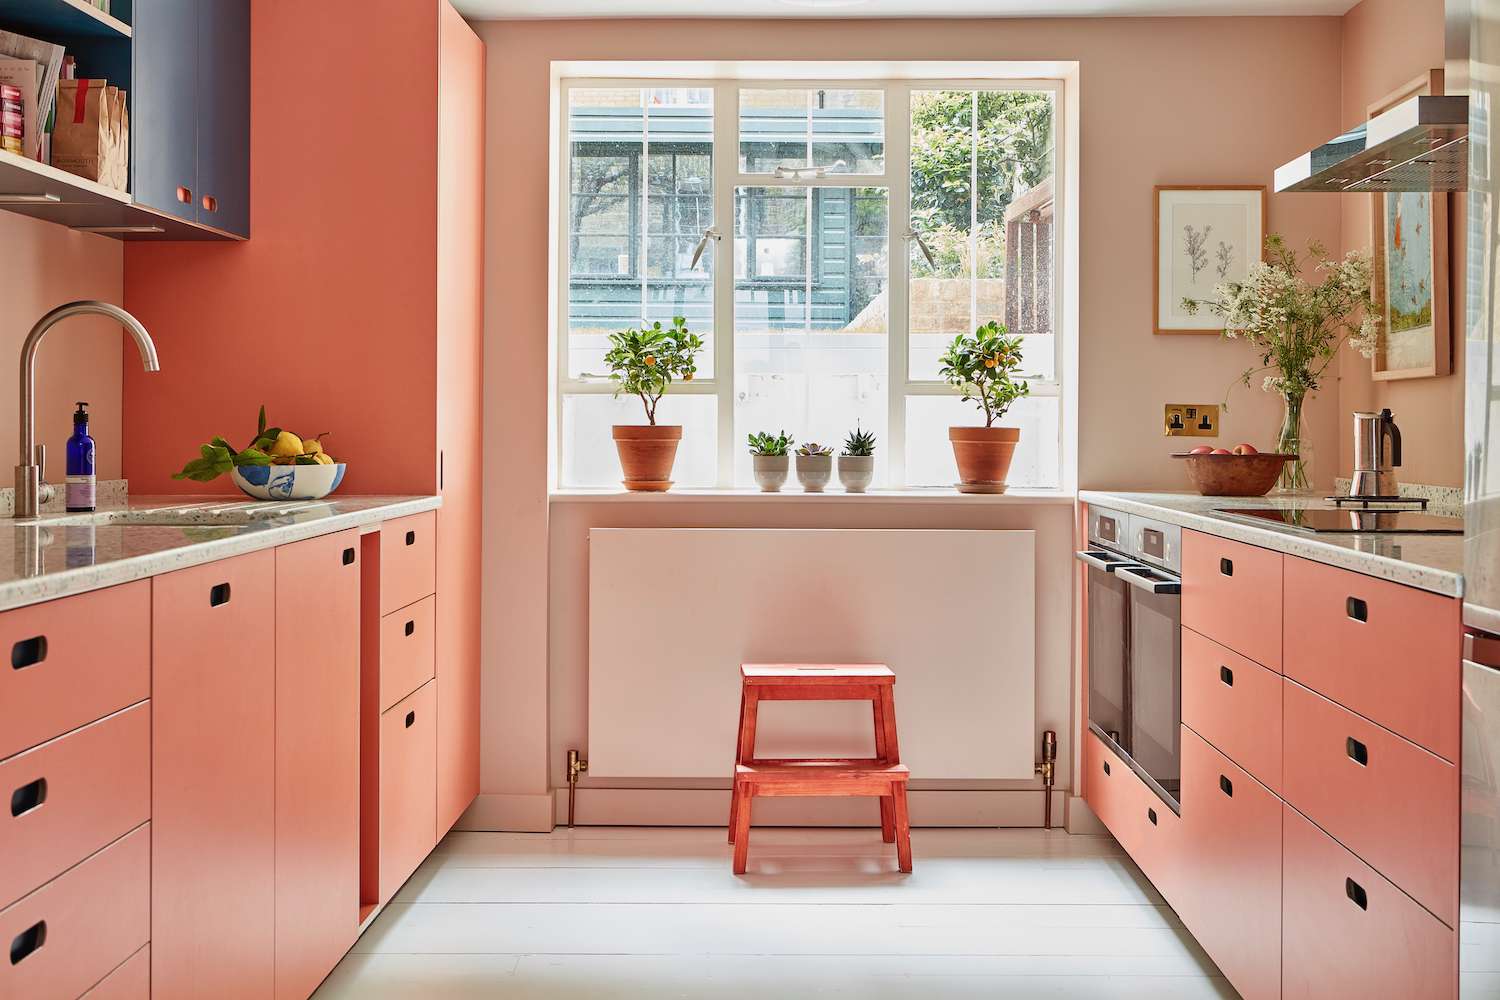 TÔNG MÀU ĐỎ ĐẬM VÀ NHẠT Nhà bếp màu đỏ với tường thạch cao màu hồng  (Tín dụng hình ảnh: Tiêu chuẩn Anh) Màu đỏ nghe có vẻ là một màu rất đậm để đưa vào nhà bếp, và ở dạng cơ bản rất thuần khiết, nó có thể sẽ như vậy. Nhưng hãy chọn một màu đỏ nhạt, mềm mại như phấn và nó có thể giúp tạo ra một căn bếp ấm cúng, đầy cá tính mà trên thực tế không mang lại cảm giác táo bạo chút nào mà chỉ tạo cảm giác như kén. Điển hình là căn bếp màu đỏ tuyệt vời này , được thiết kế bởi British Standard .   Nó giúp ích cho việc tủ màu đỏ được kết hợp với những bức tường màu hồng kem mềm mại để tạo ra hiệu ứng tông màu cân bằng bất kỳ sự sống động nào. 'Bóng tối với ánh sáng là sự kết hợp đáng yêu mang lại một chút màu sắc được làm nổi bật bởi các phấn màu nhẹ nhàng hơn. Nó tạo thêm sự thú vị trong khi vẫn giữ cho không gian sáng sủa và thoáng mát', William Durrant, người sáng lập Herringbone Kitchens giải thích .